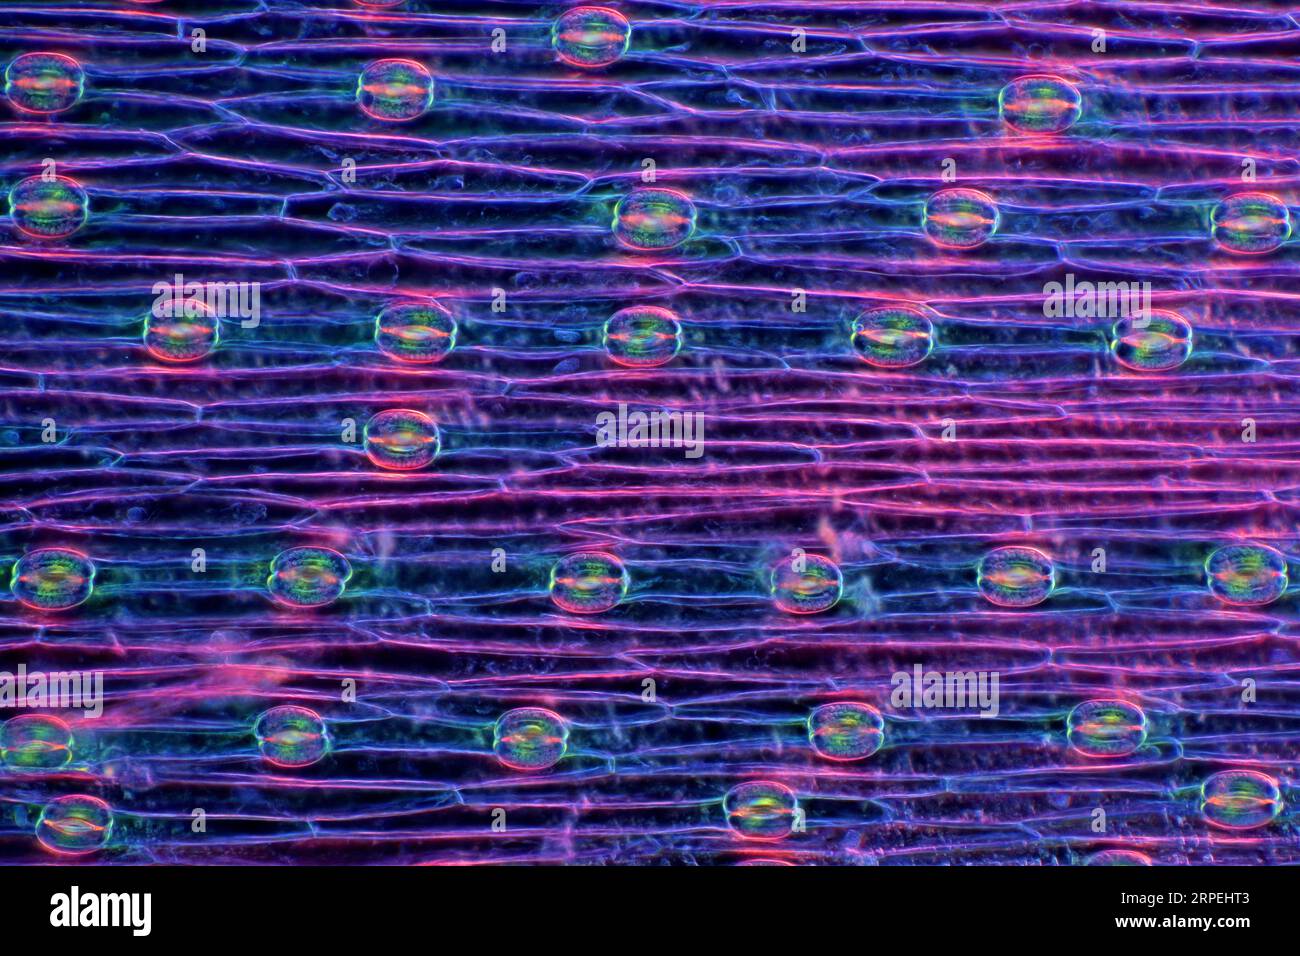 Das Bild zeigt Stomata in der Epidermis des Hyazinthenblattes, die durch das Mikroskop in polarisiertem Licht mit einer Vergrößerung von 100X aufgenommen wurden Stockfoto